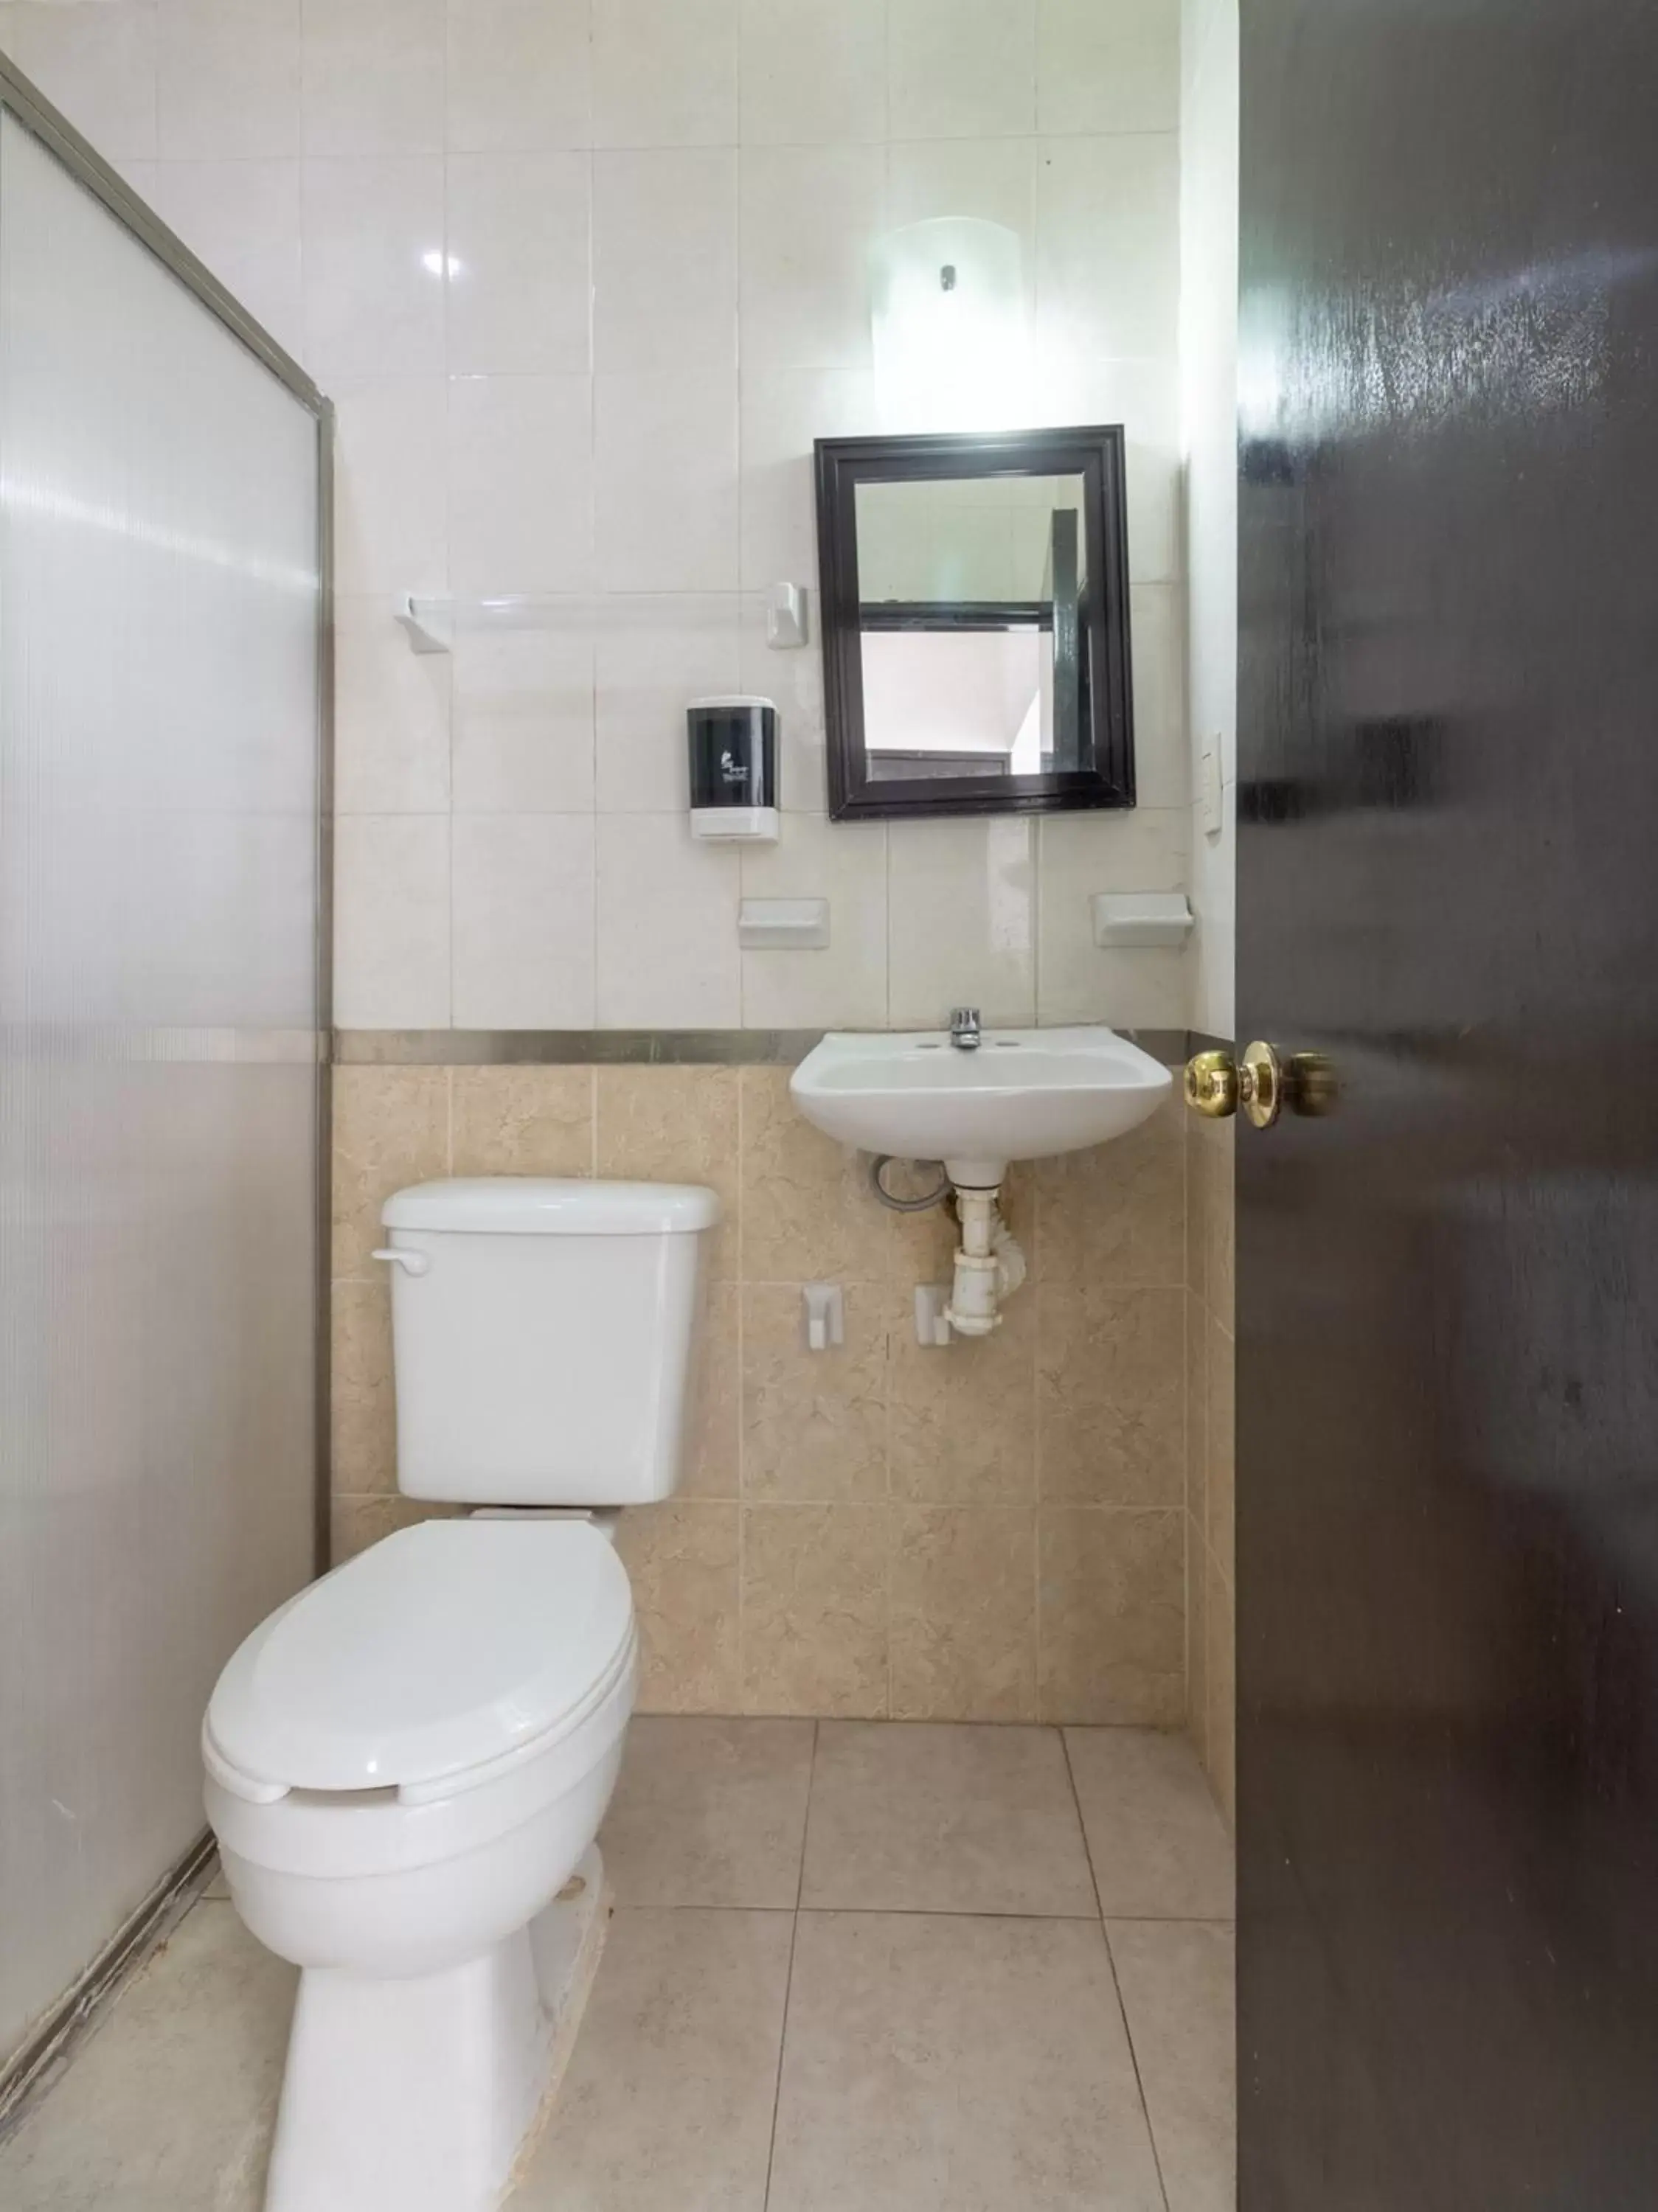 Bathroom in OYO Hotel Puesta del Sol, Santa Ana, Campeche